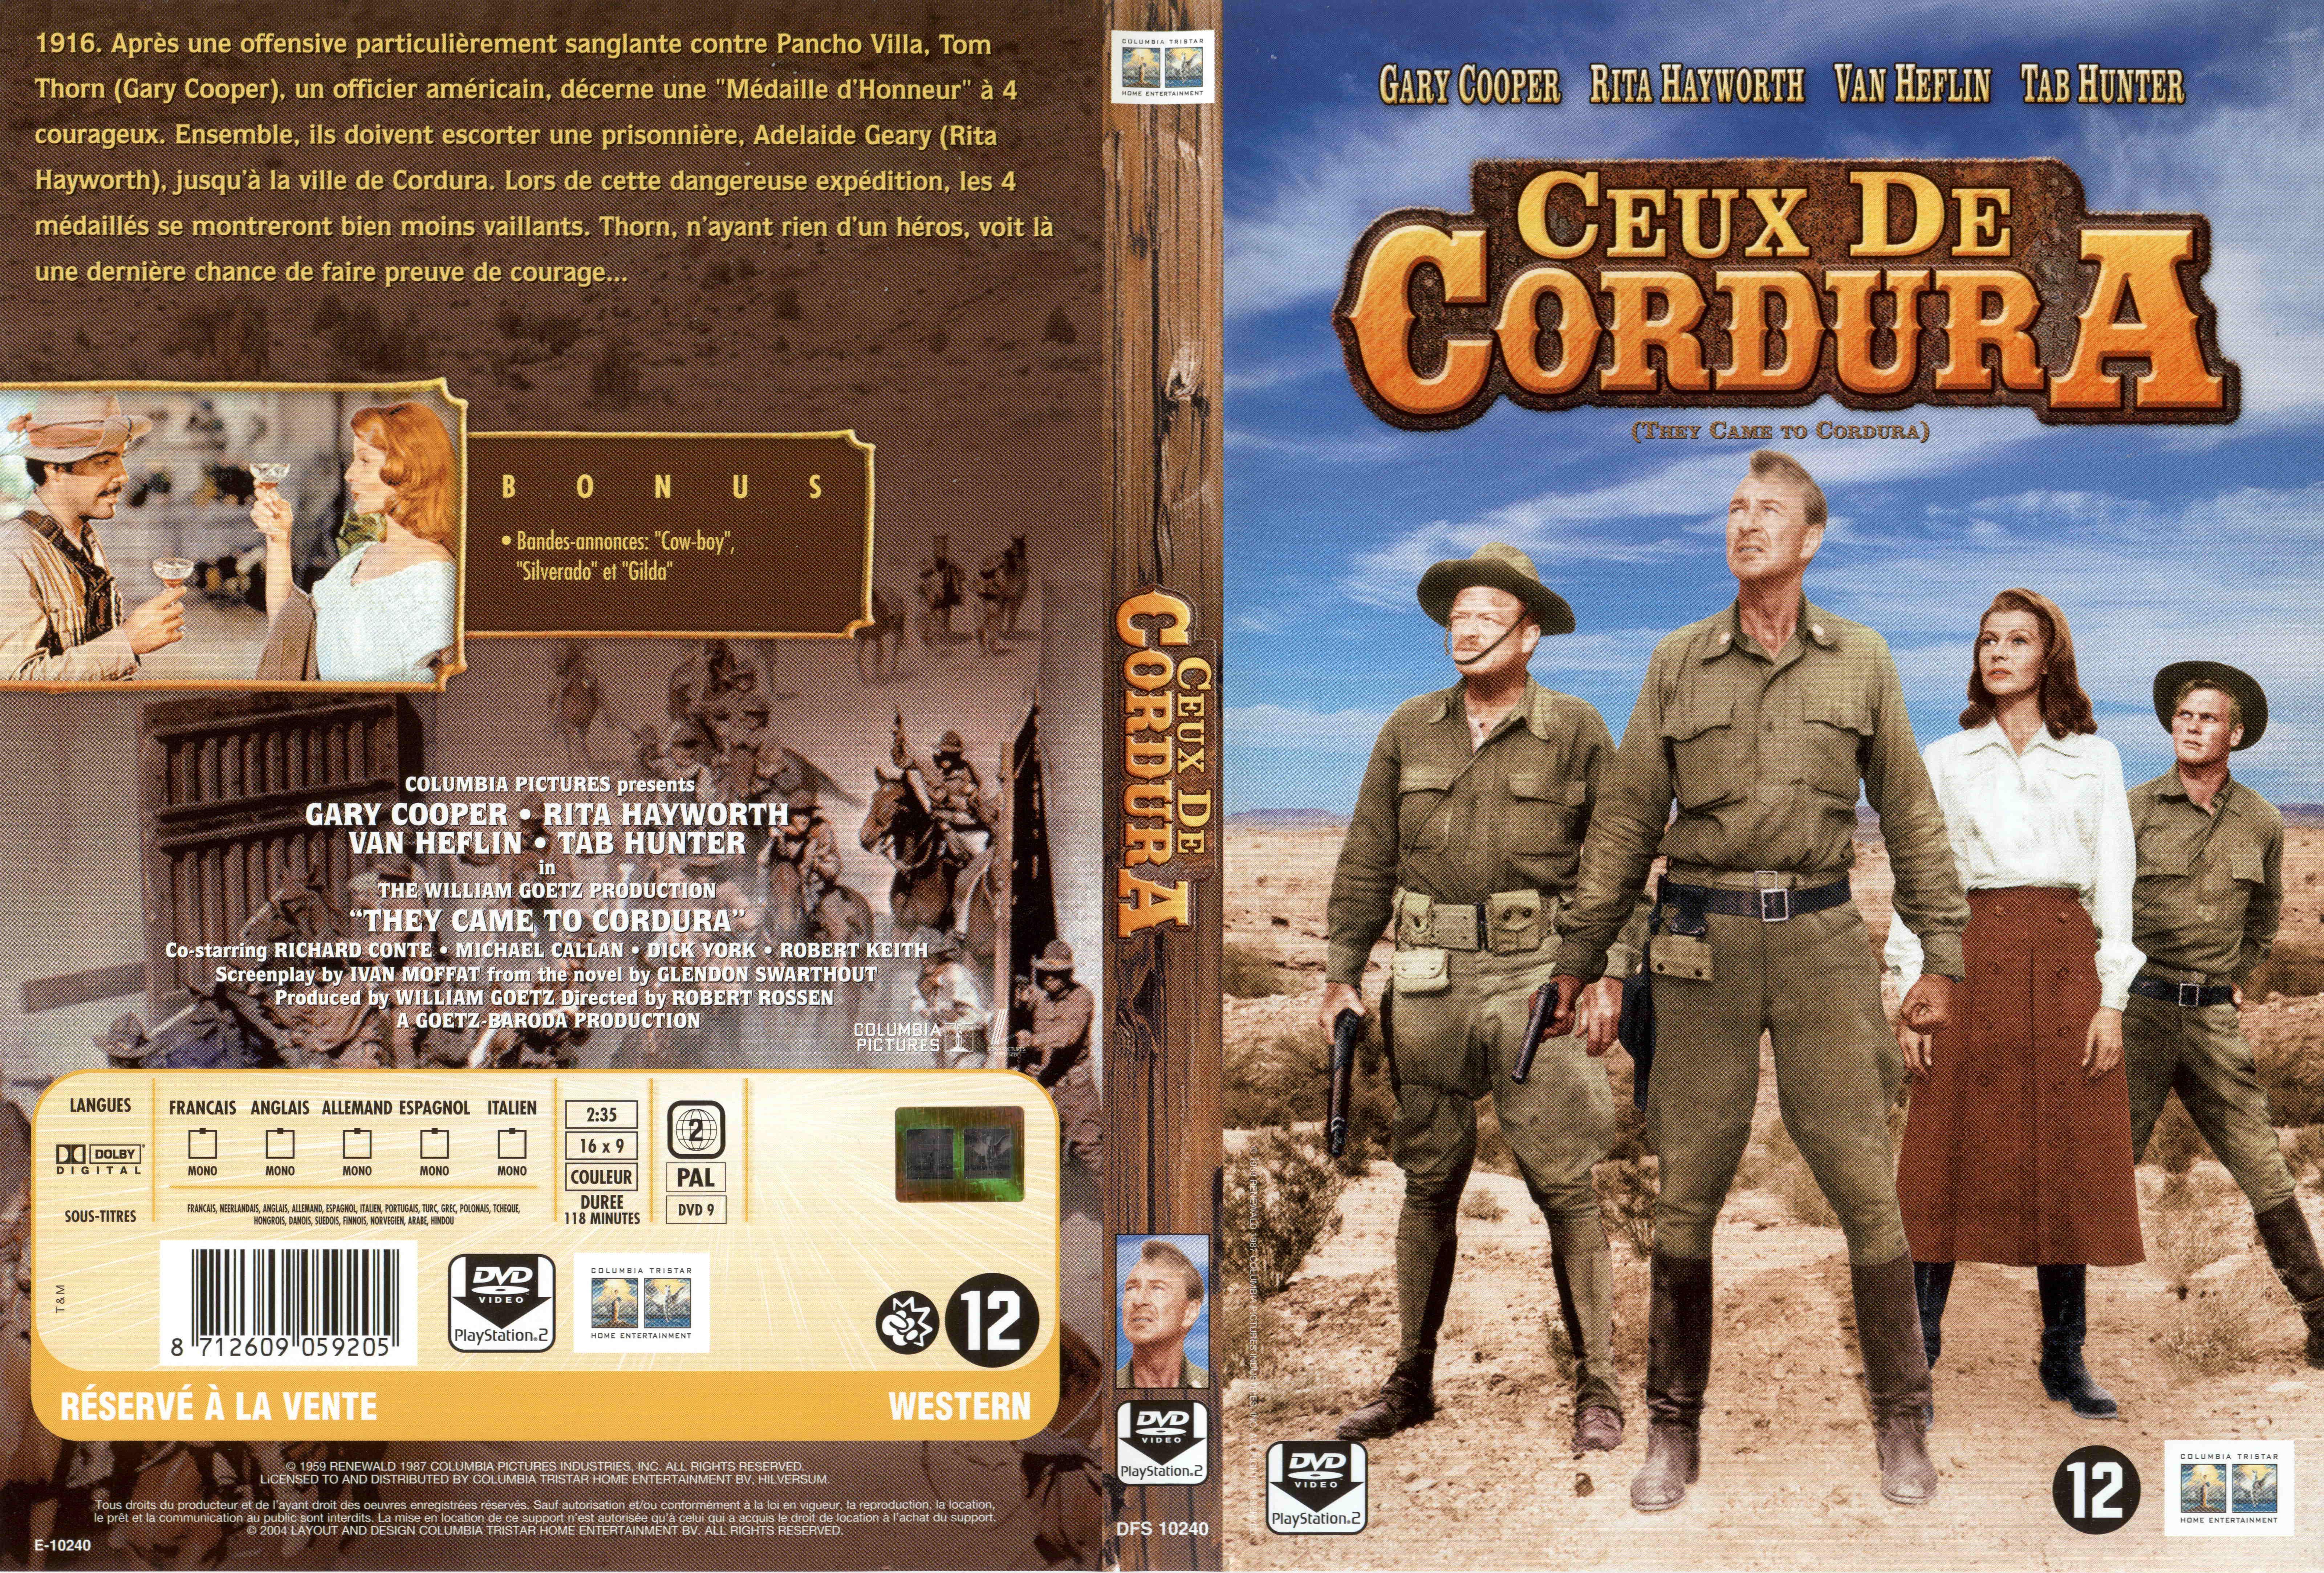 Jaquette DVD Ceux de Cordura v2